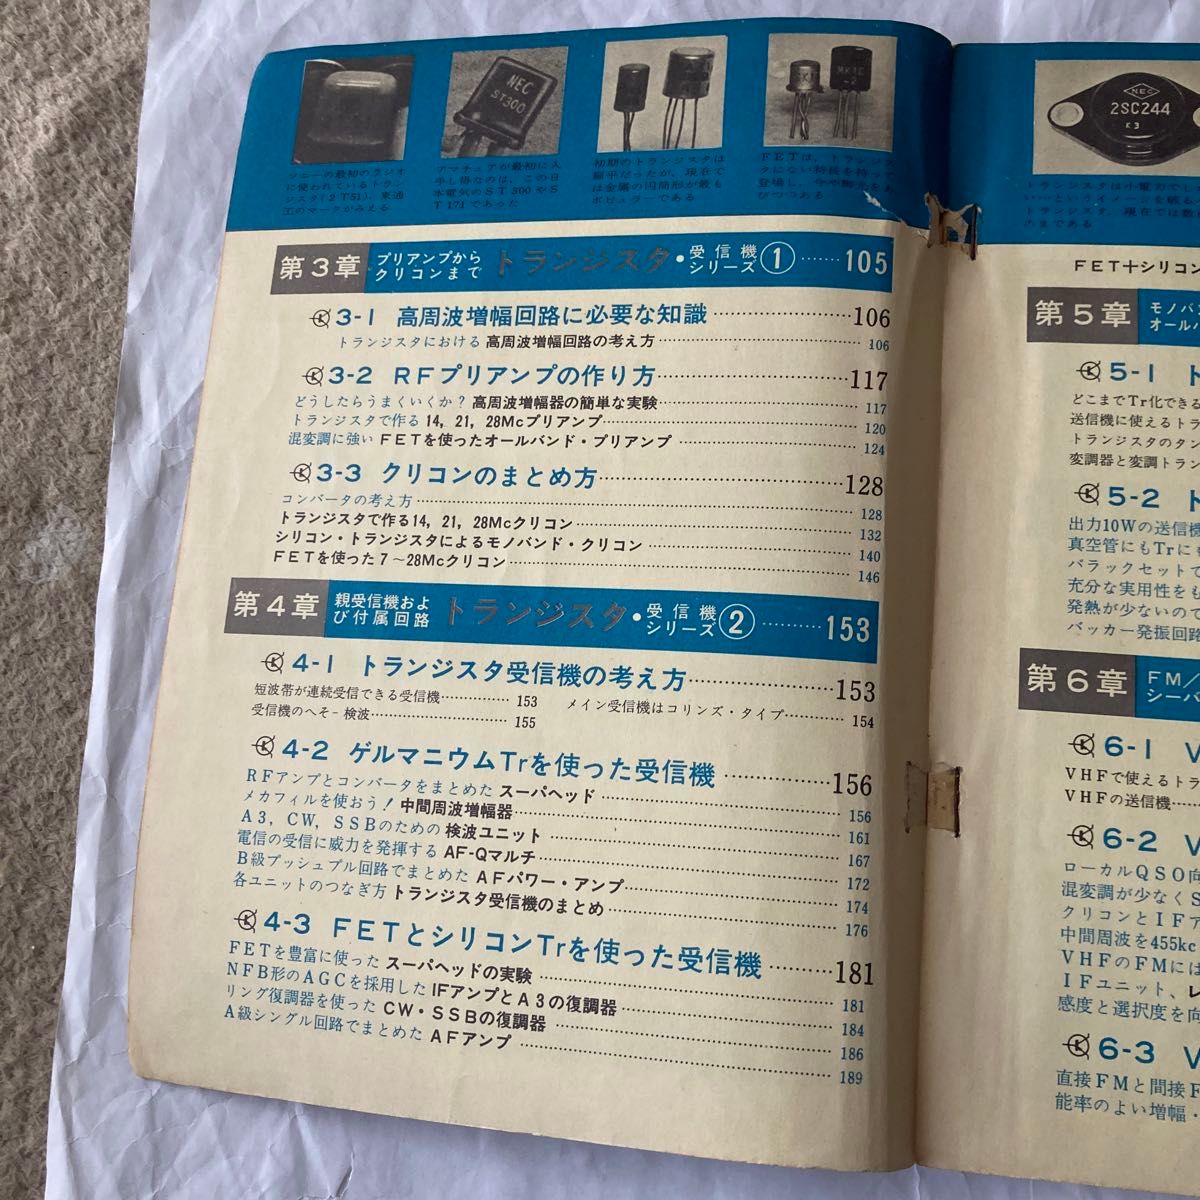 トランジスタ活用ハンドブック　昭和43年5月発行  CQ出版社発行　CQ誌増刊号　古い年代の物ですが、現在でも通用すると思います。